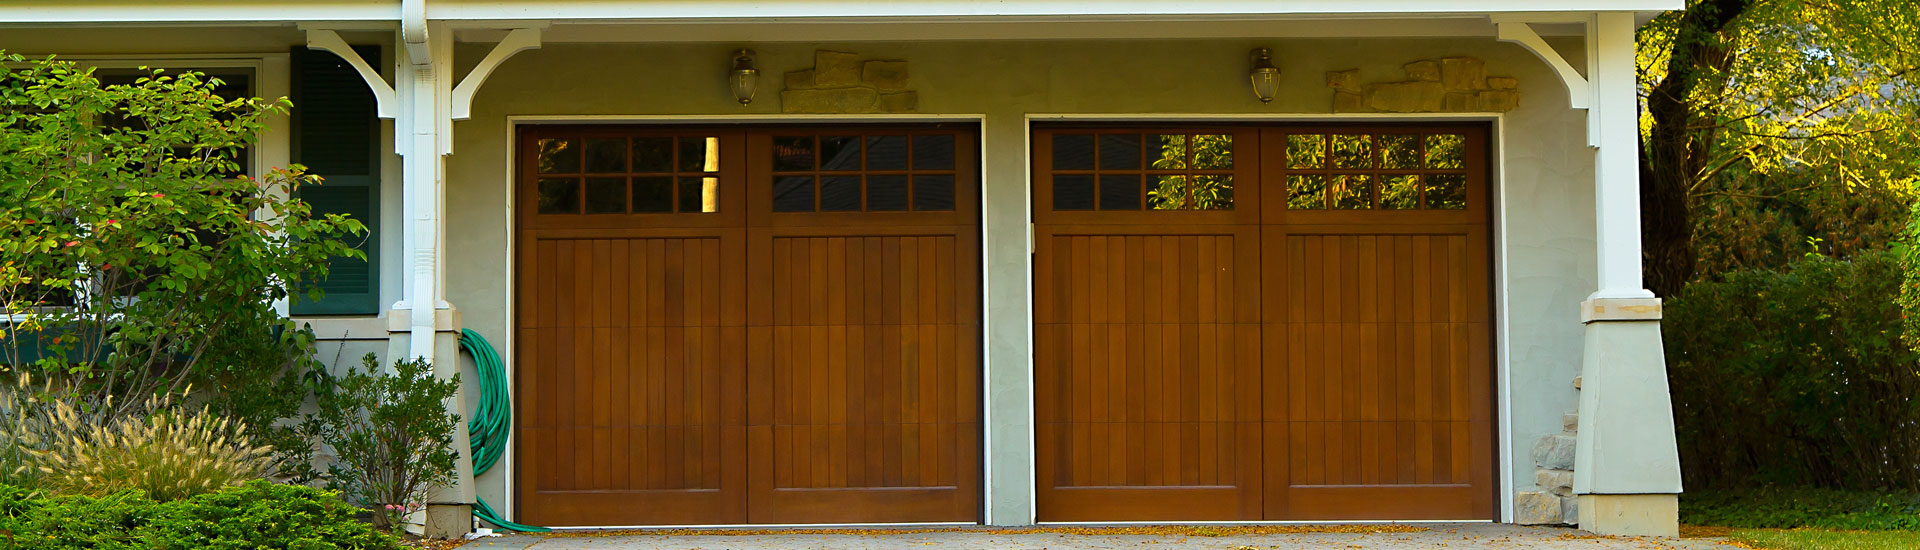 Two Garage Doors